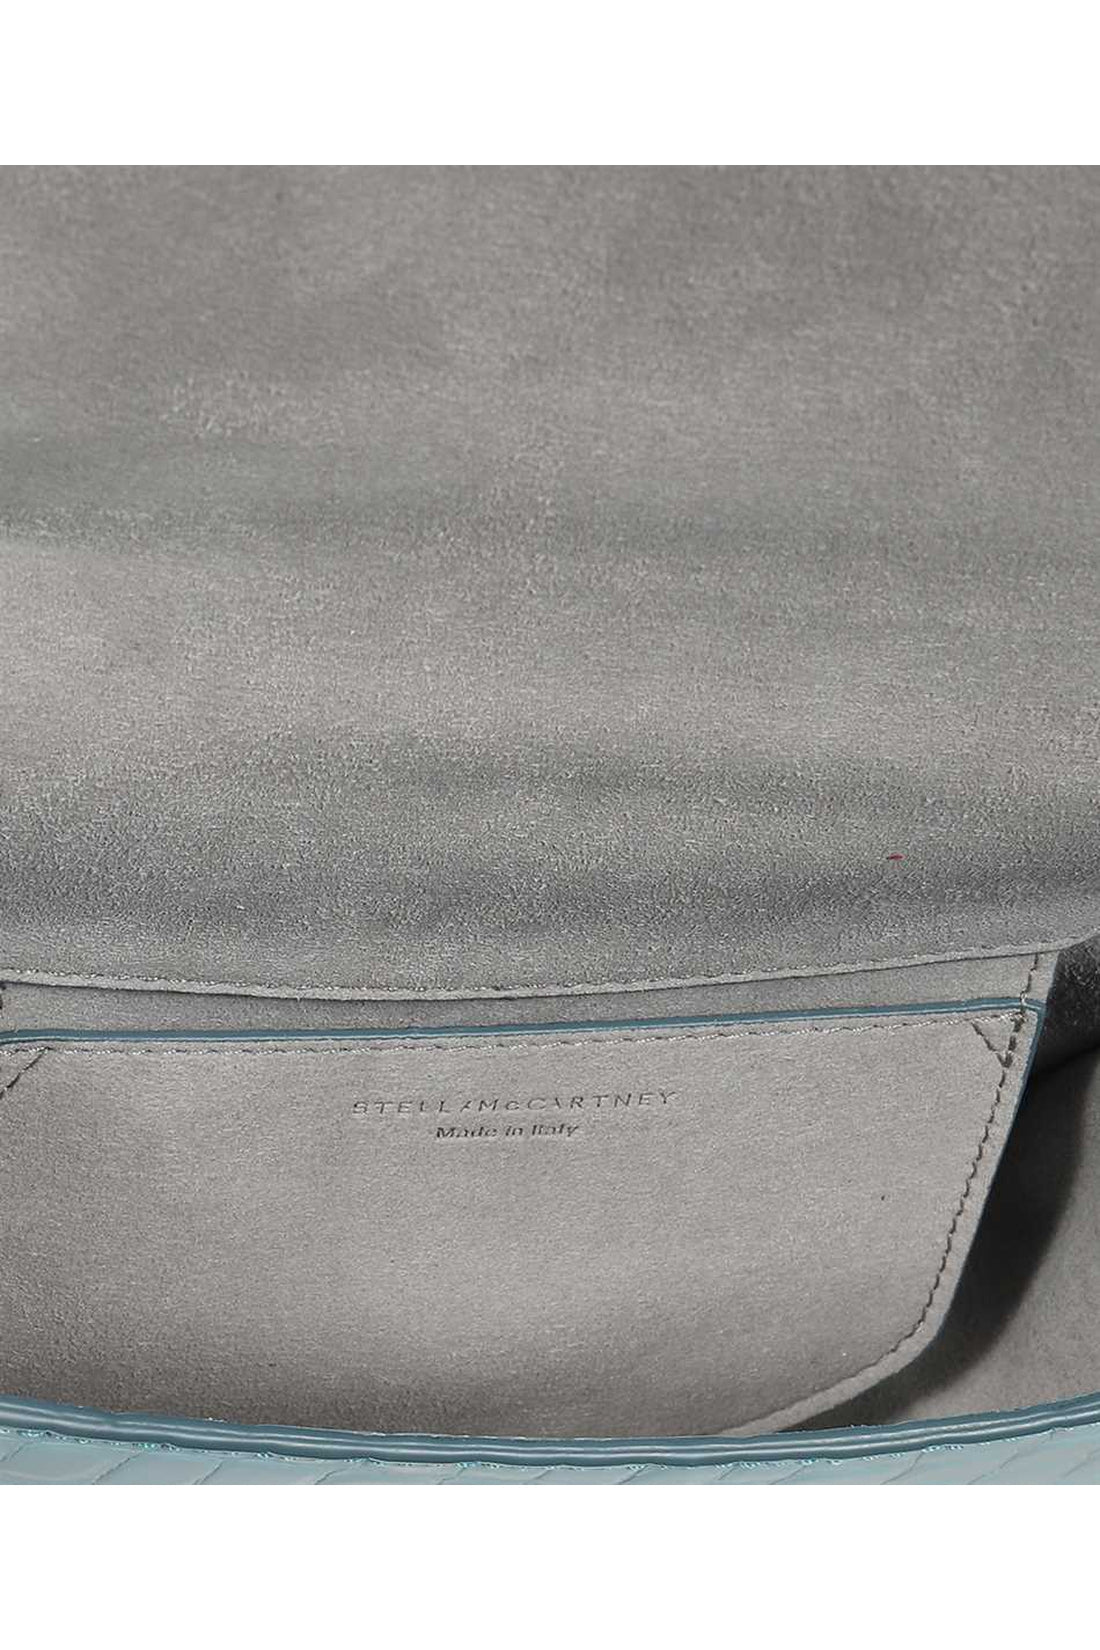 Stella McCartney-OUTLET-SALE-Frayme vegan leather shoulder bag-ARCHIVIST